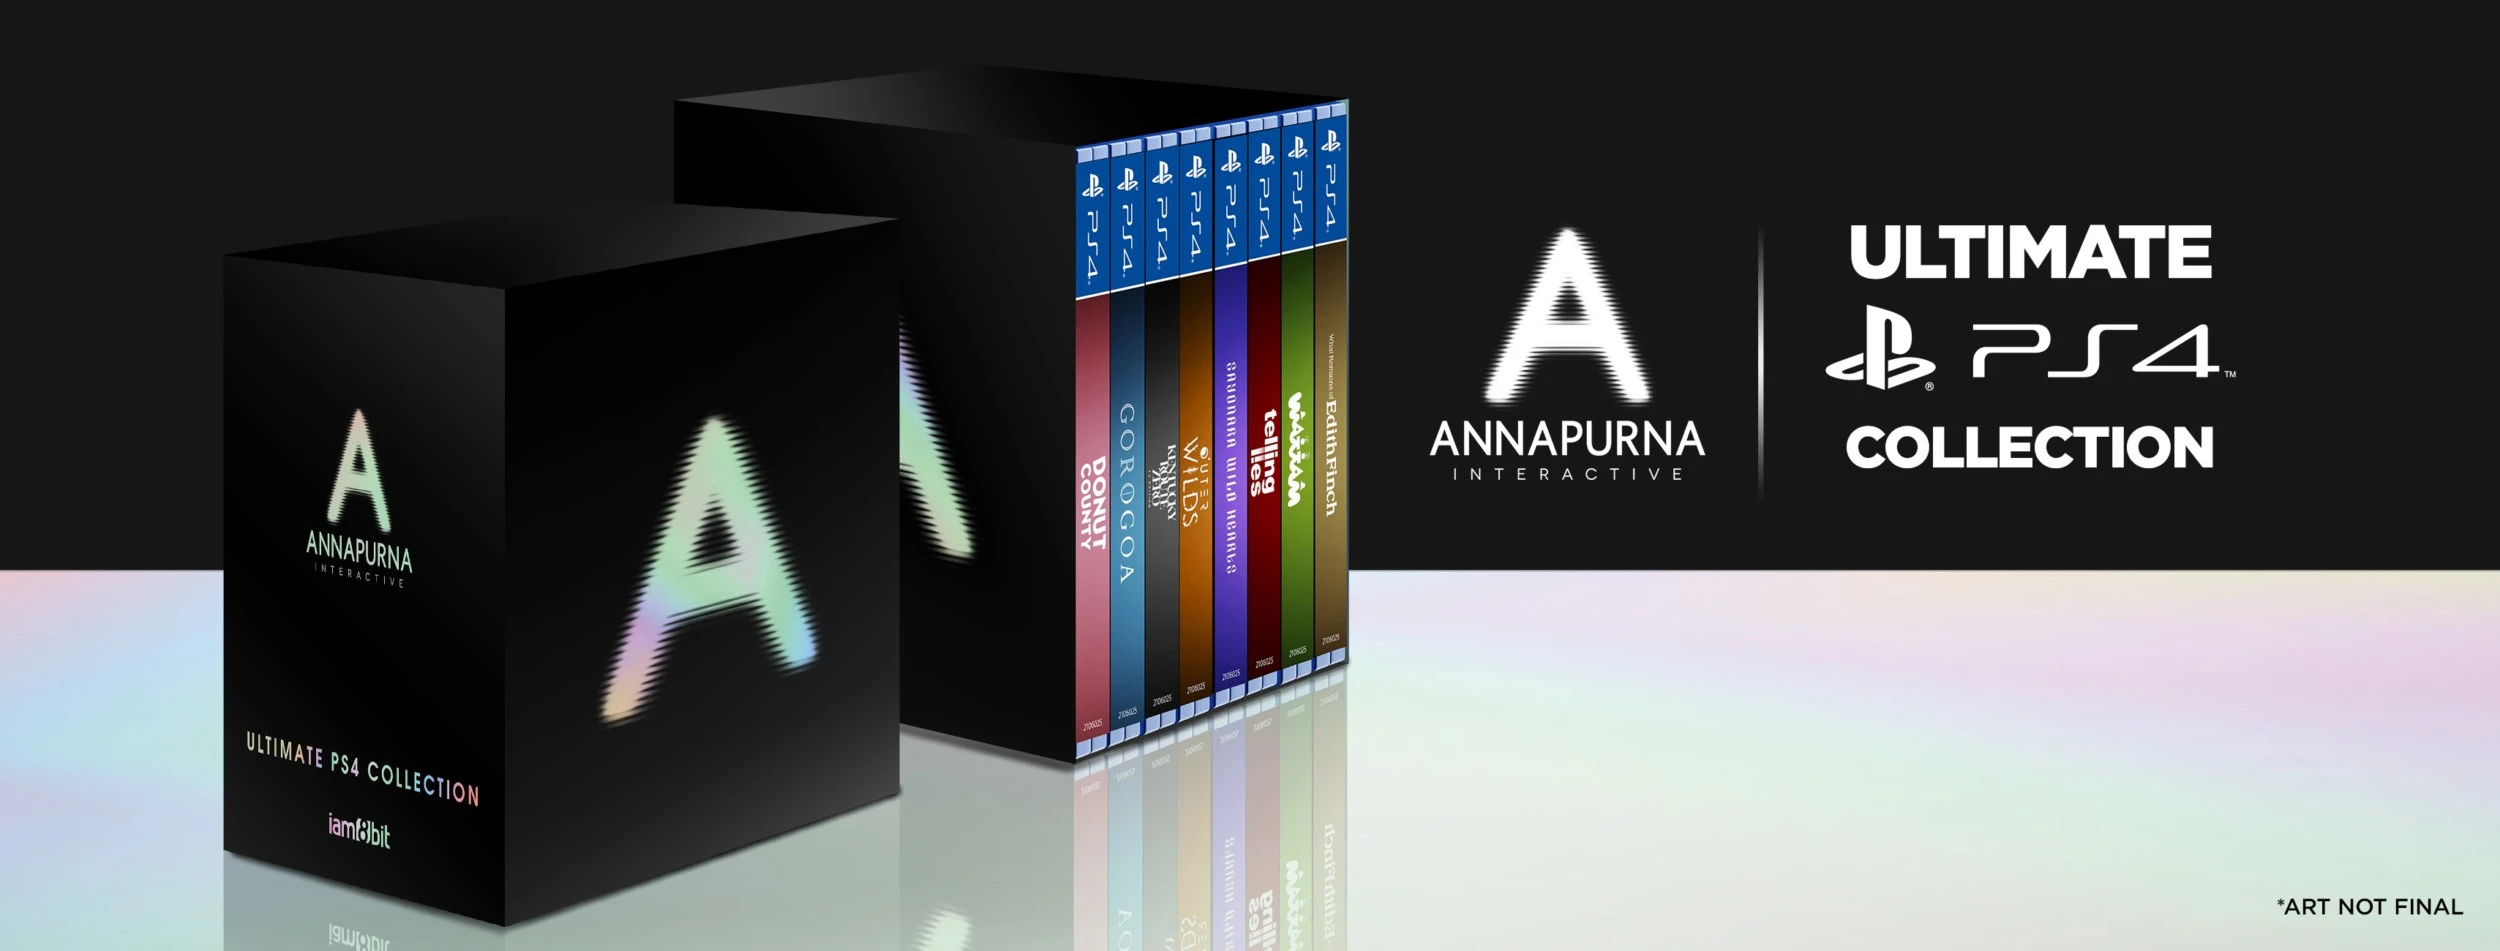 Annapurna Interactive lanzará edición Ultimate ocho juegos primeros años